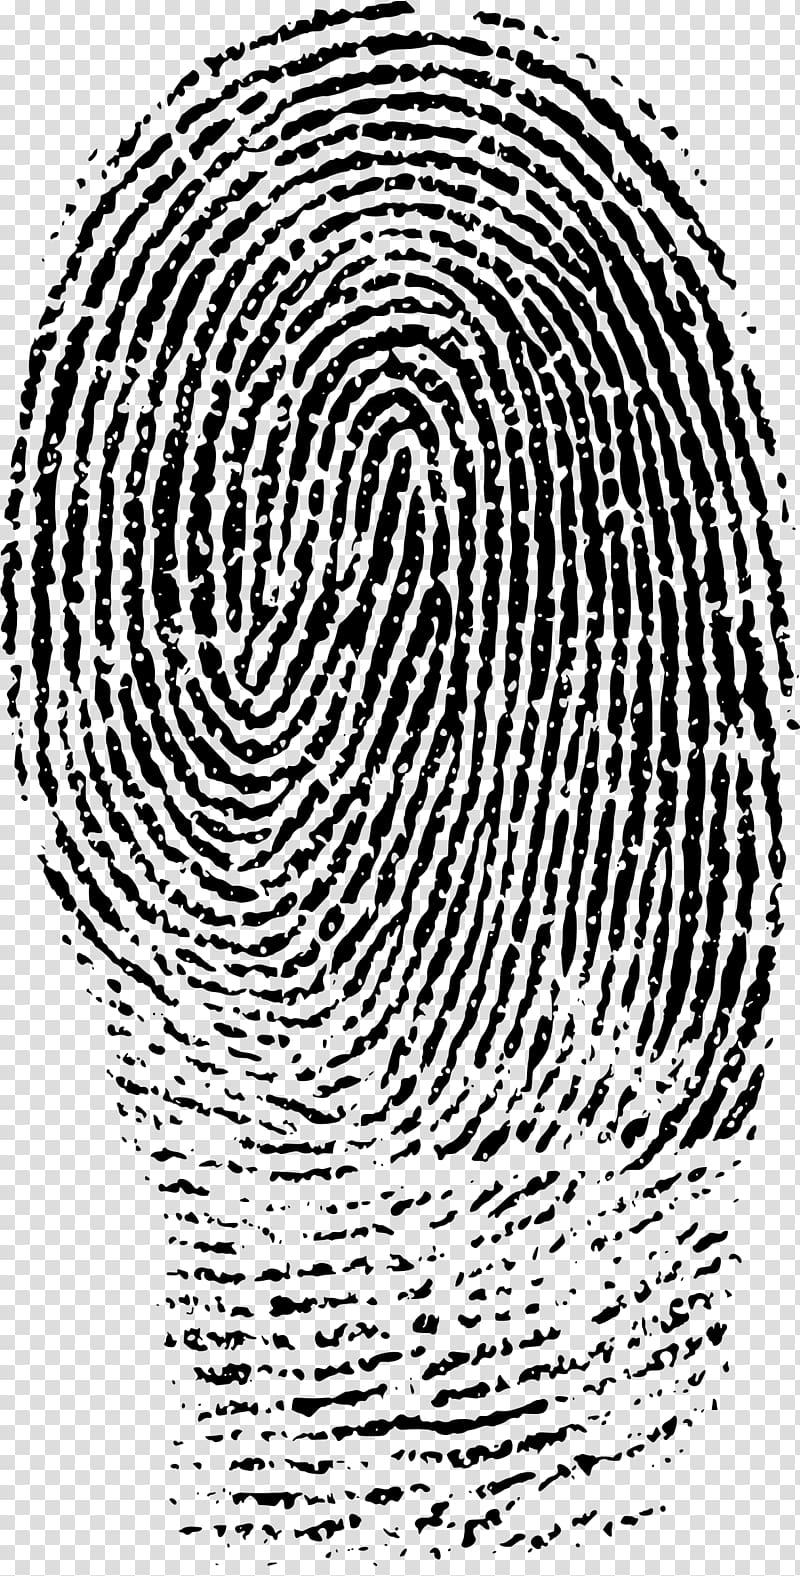 Fingerprint Evidence Forensic science Crime scene, finger print transparent background PNG clipart